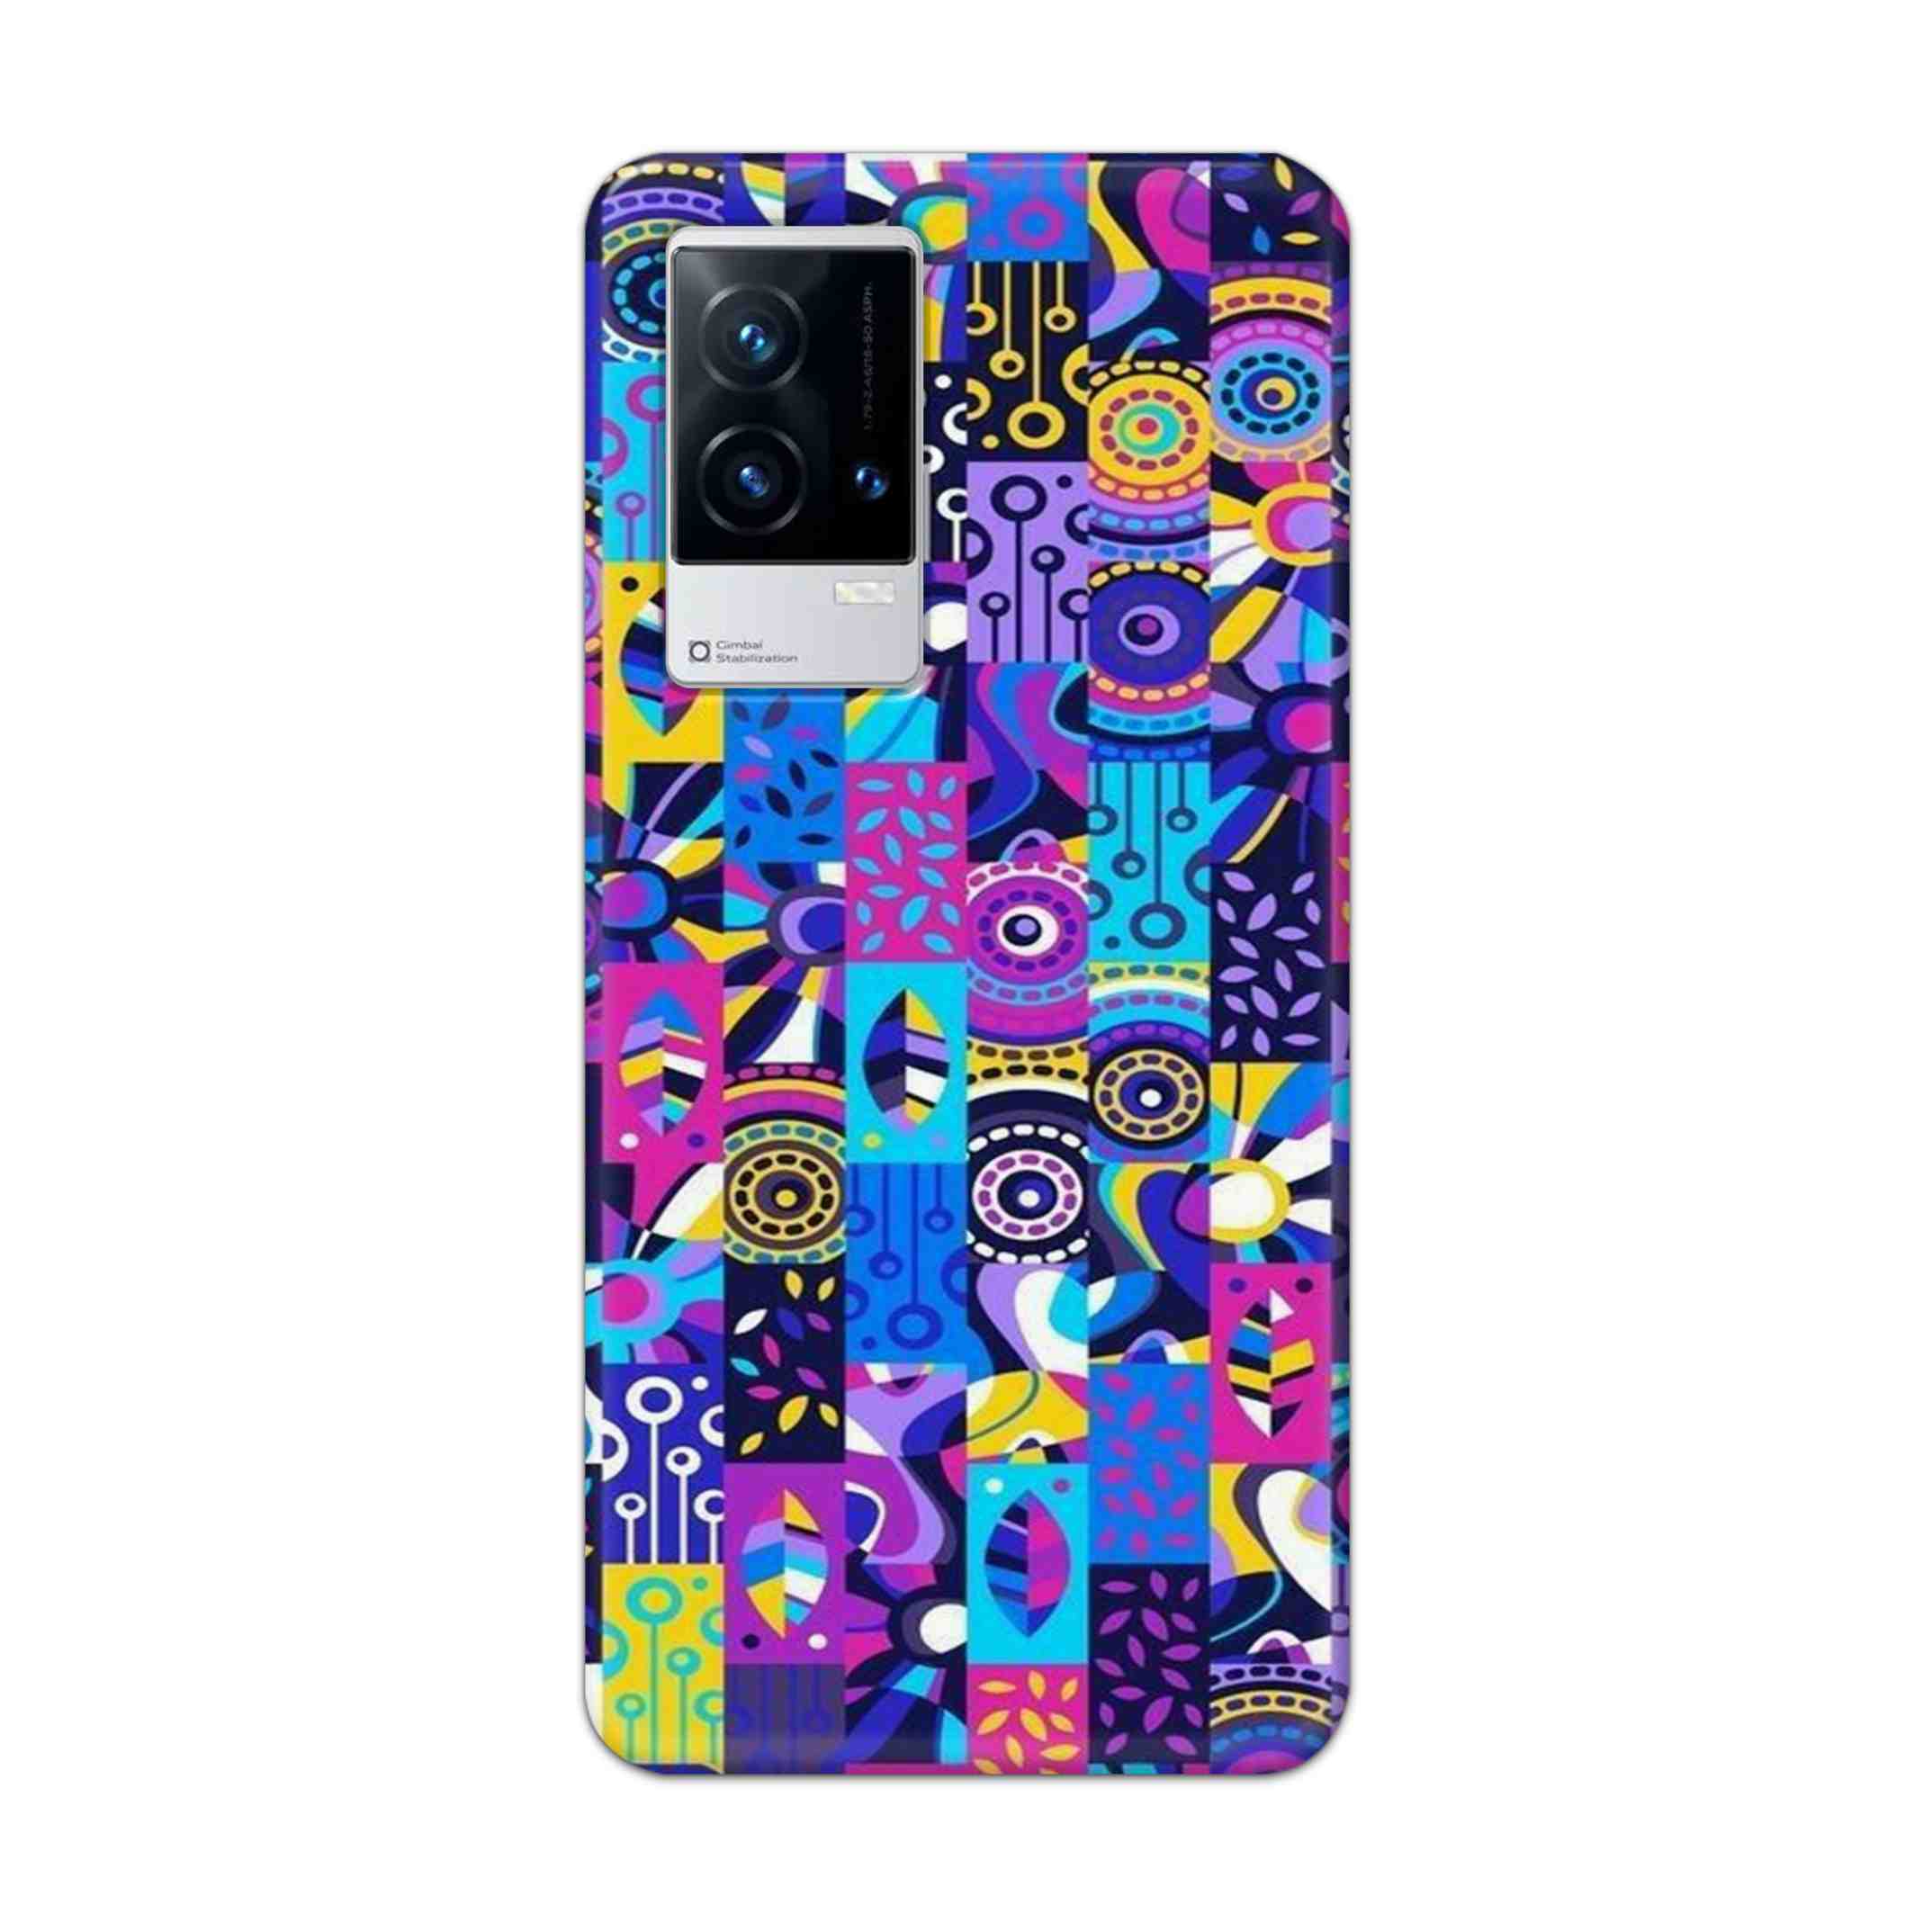 Buy Rainbow Art Hard Back Mobile Phone Case Cover For Vivo iQOO 9 5G Online